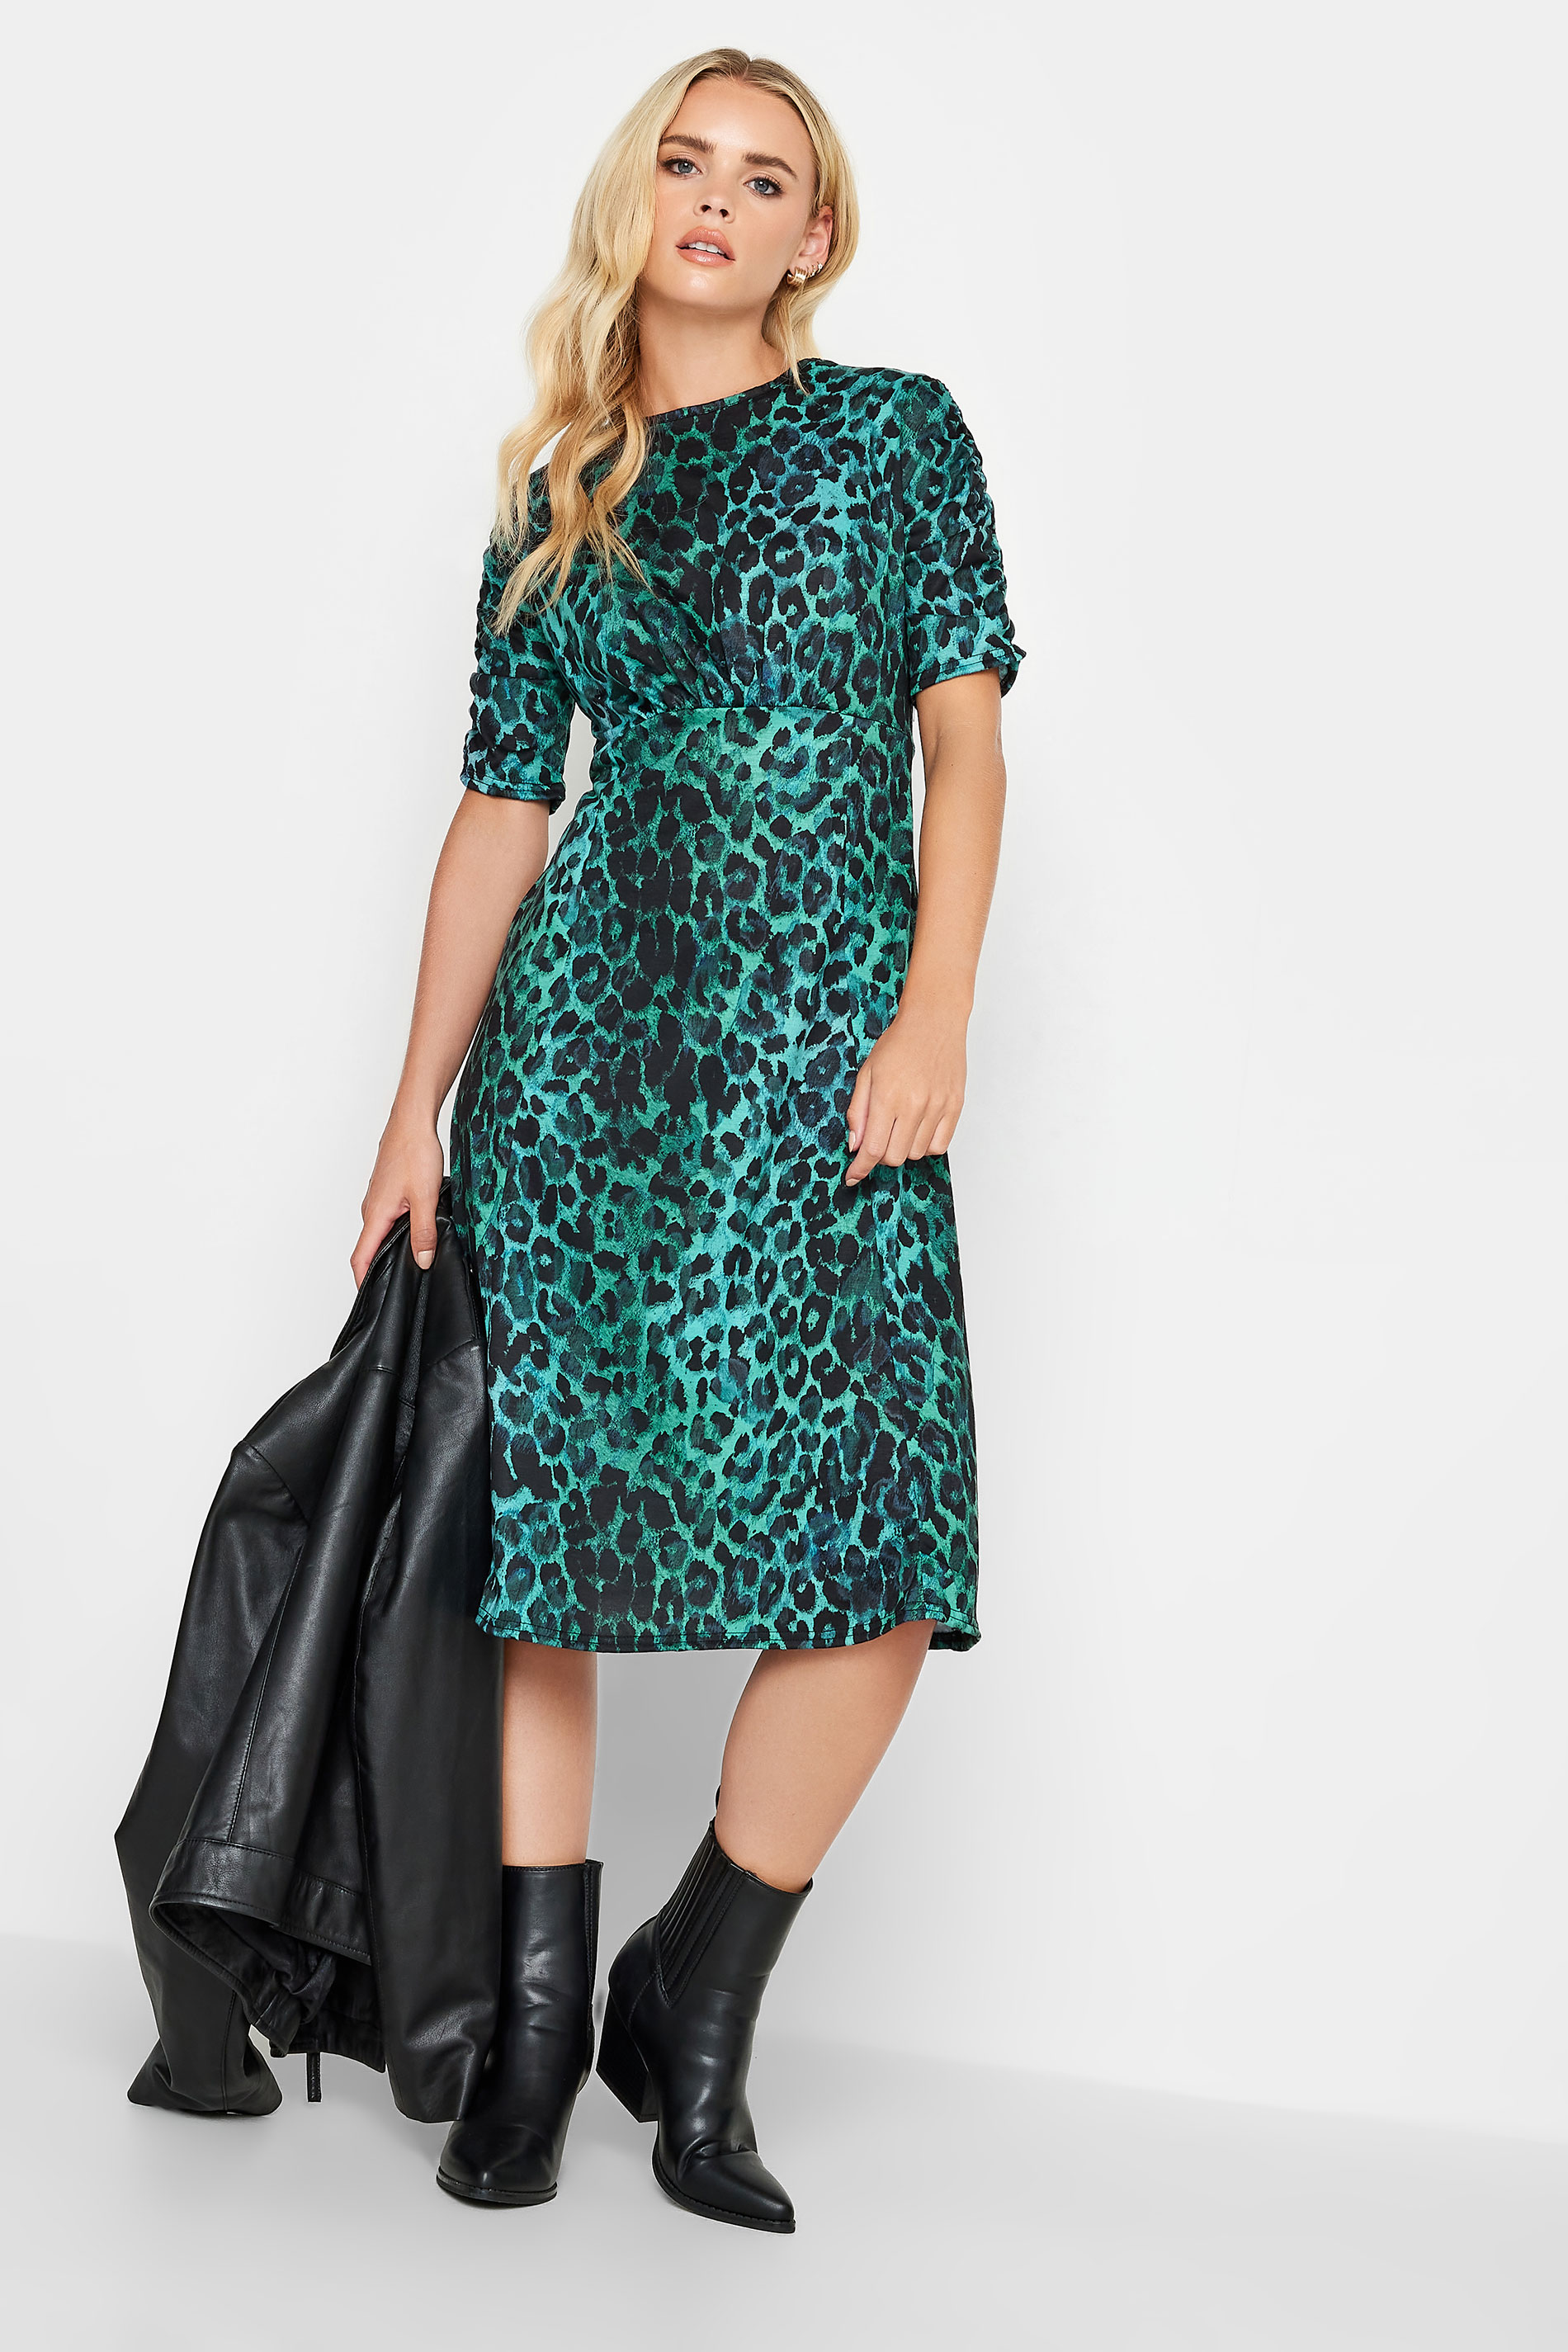 PixieGirl Blue Leopard Print Midi Dress | PixieGirl  2